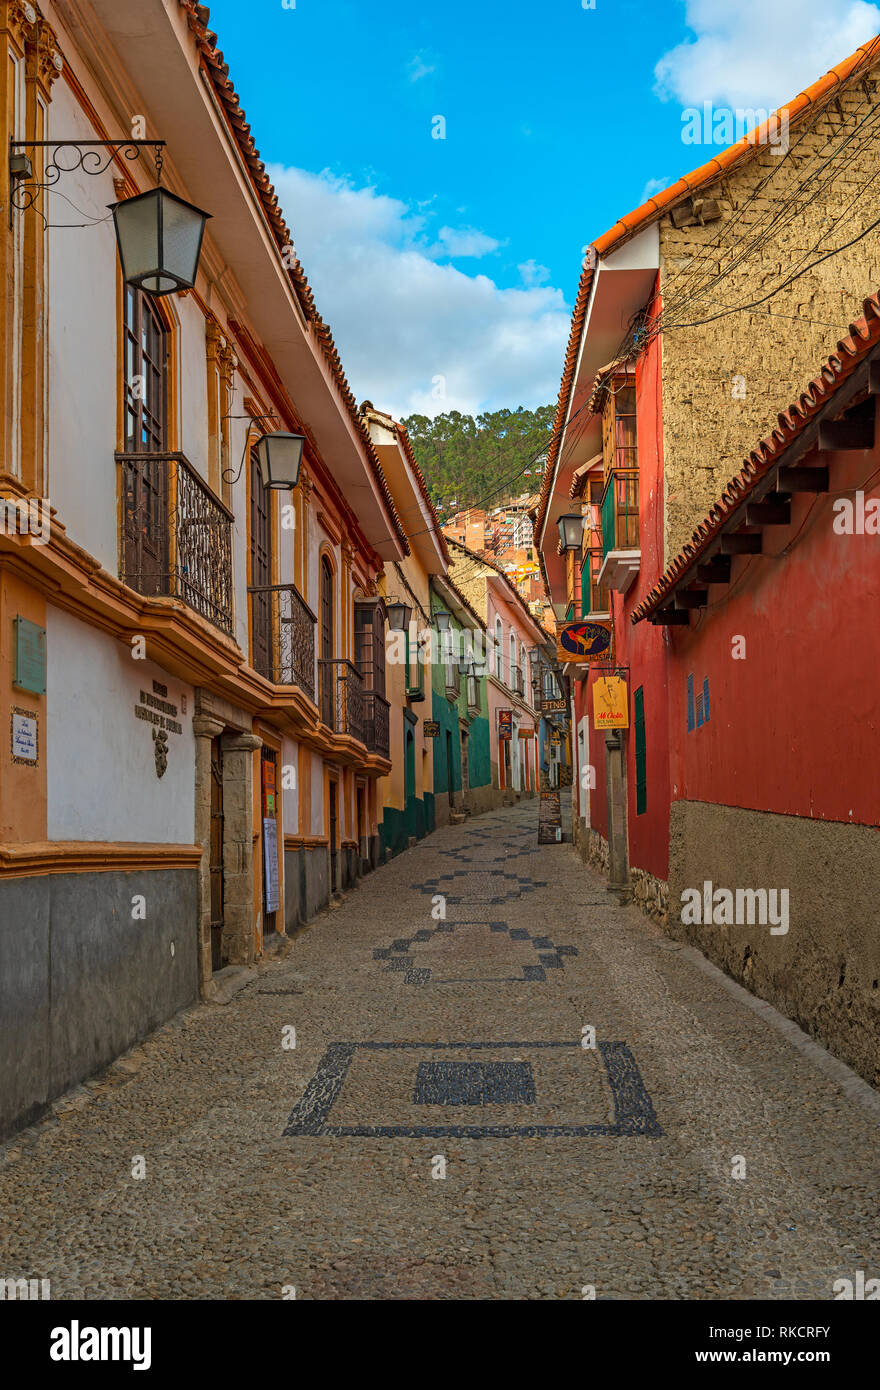 Photographie verticale de la belle rue Jaen avec son architecture coloniale espagnole colorée dans le centre historique de la ville de La Paz, Bolivie. Banque D'Images